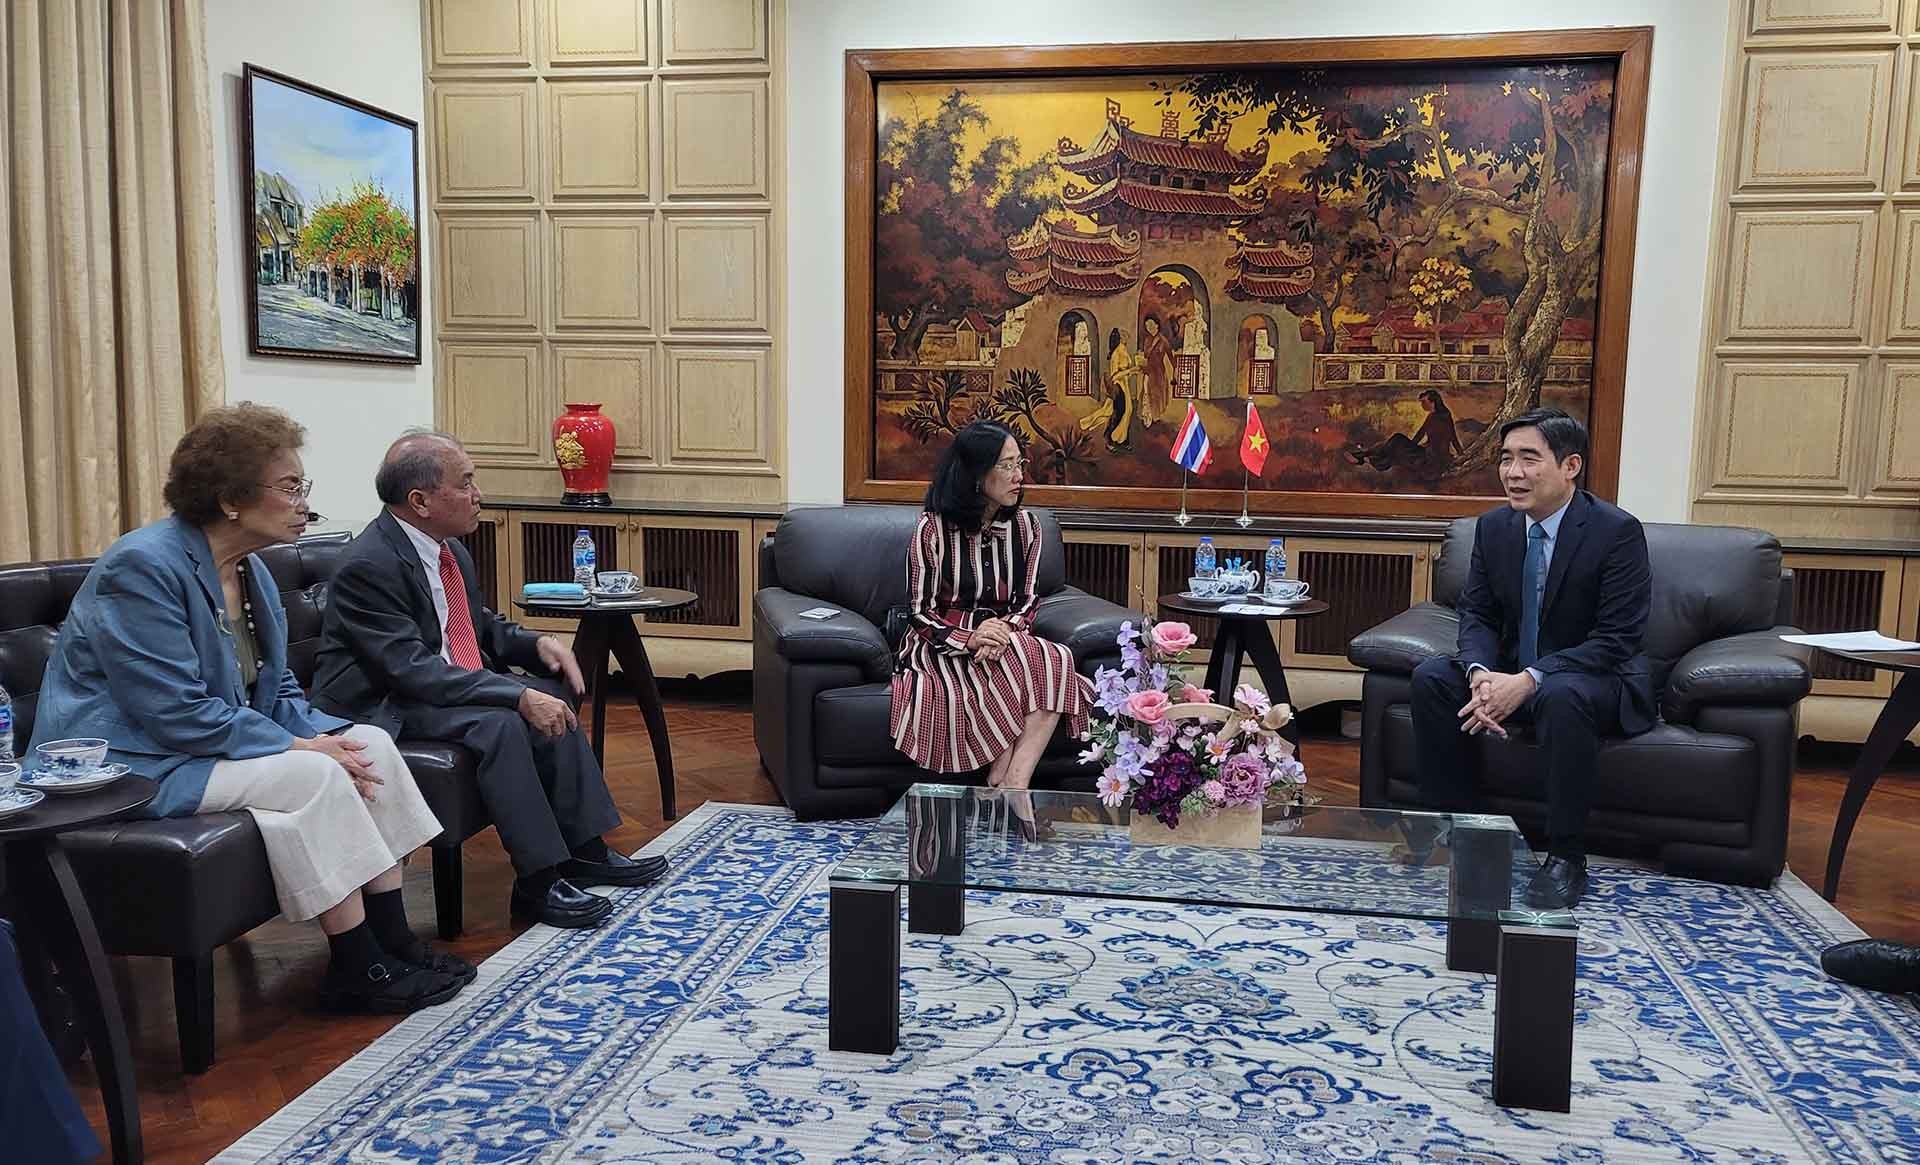 Đại sứ Phạm Việt Hùng làm việc với bà Jariya Chirathivat, Chủ tịch Hội đồng kinh doanh Thái-Việt.